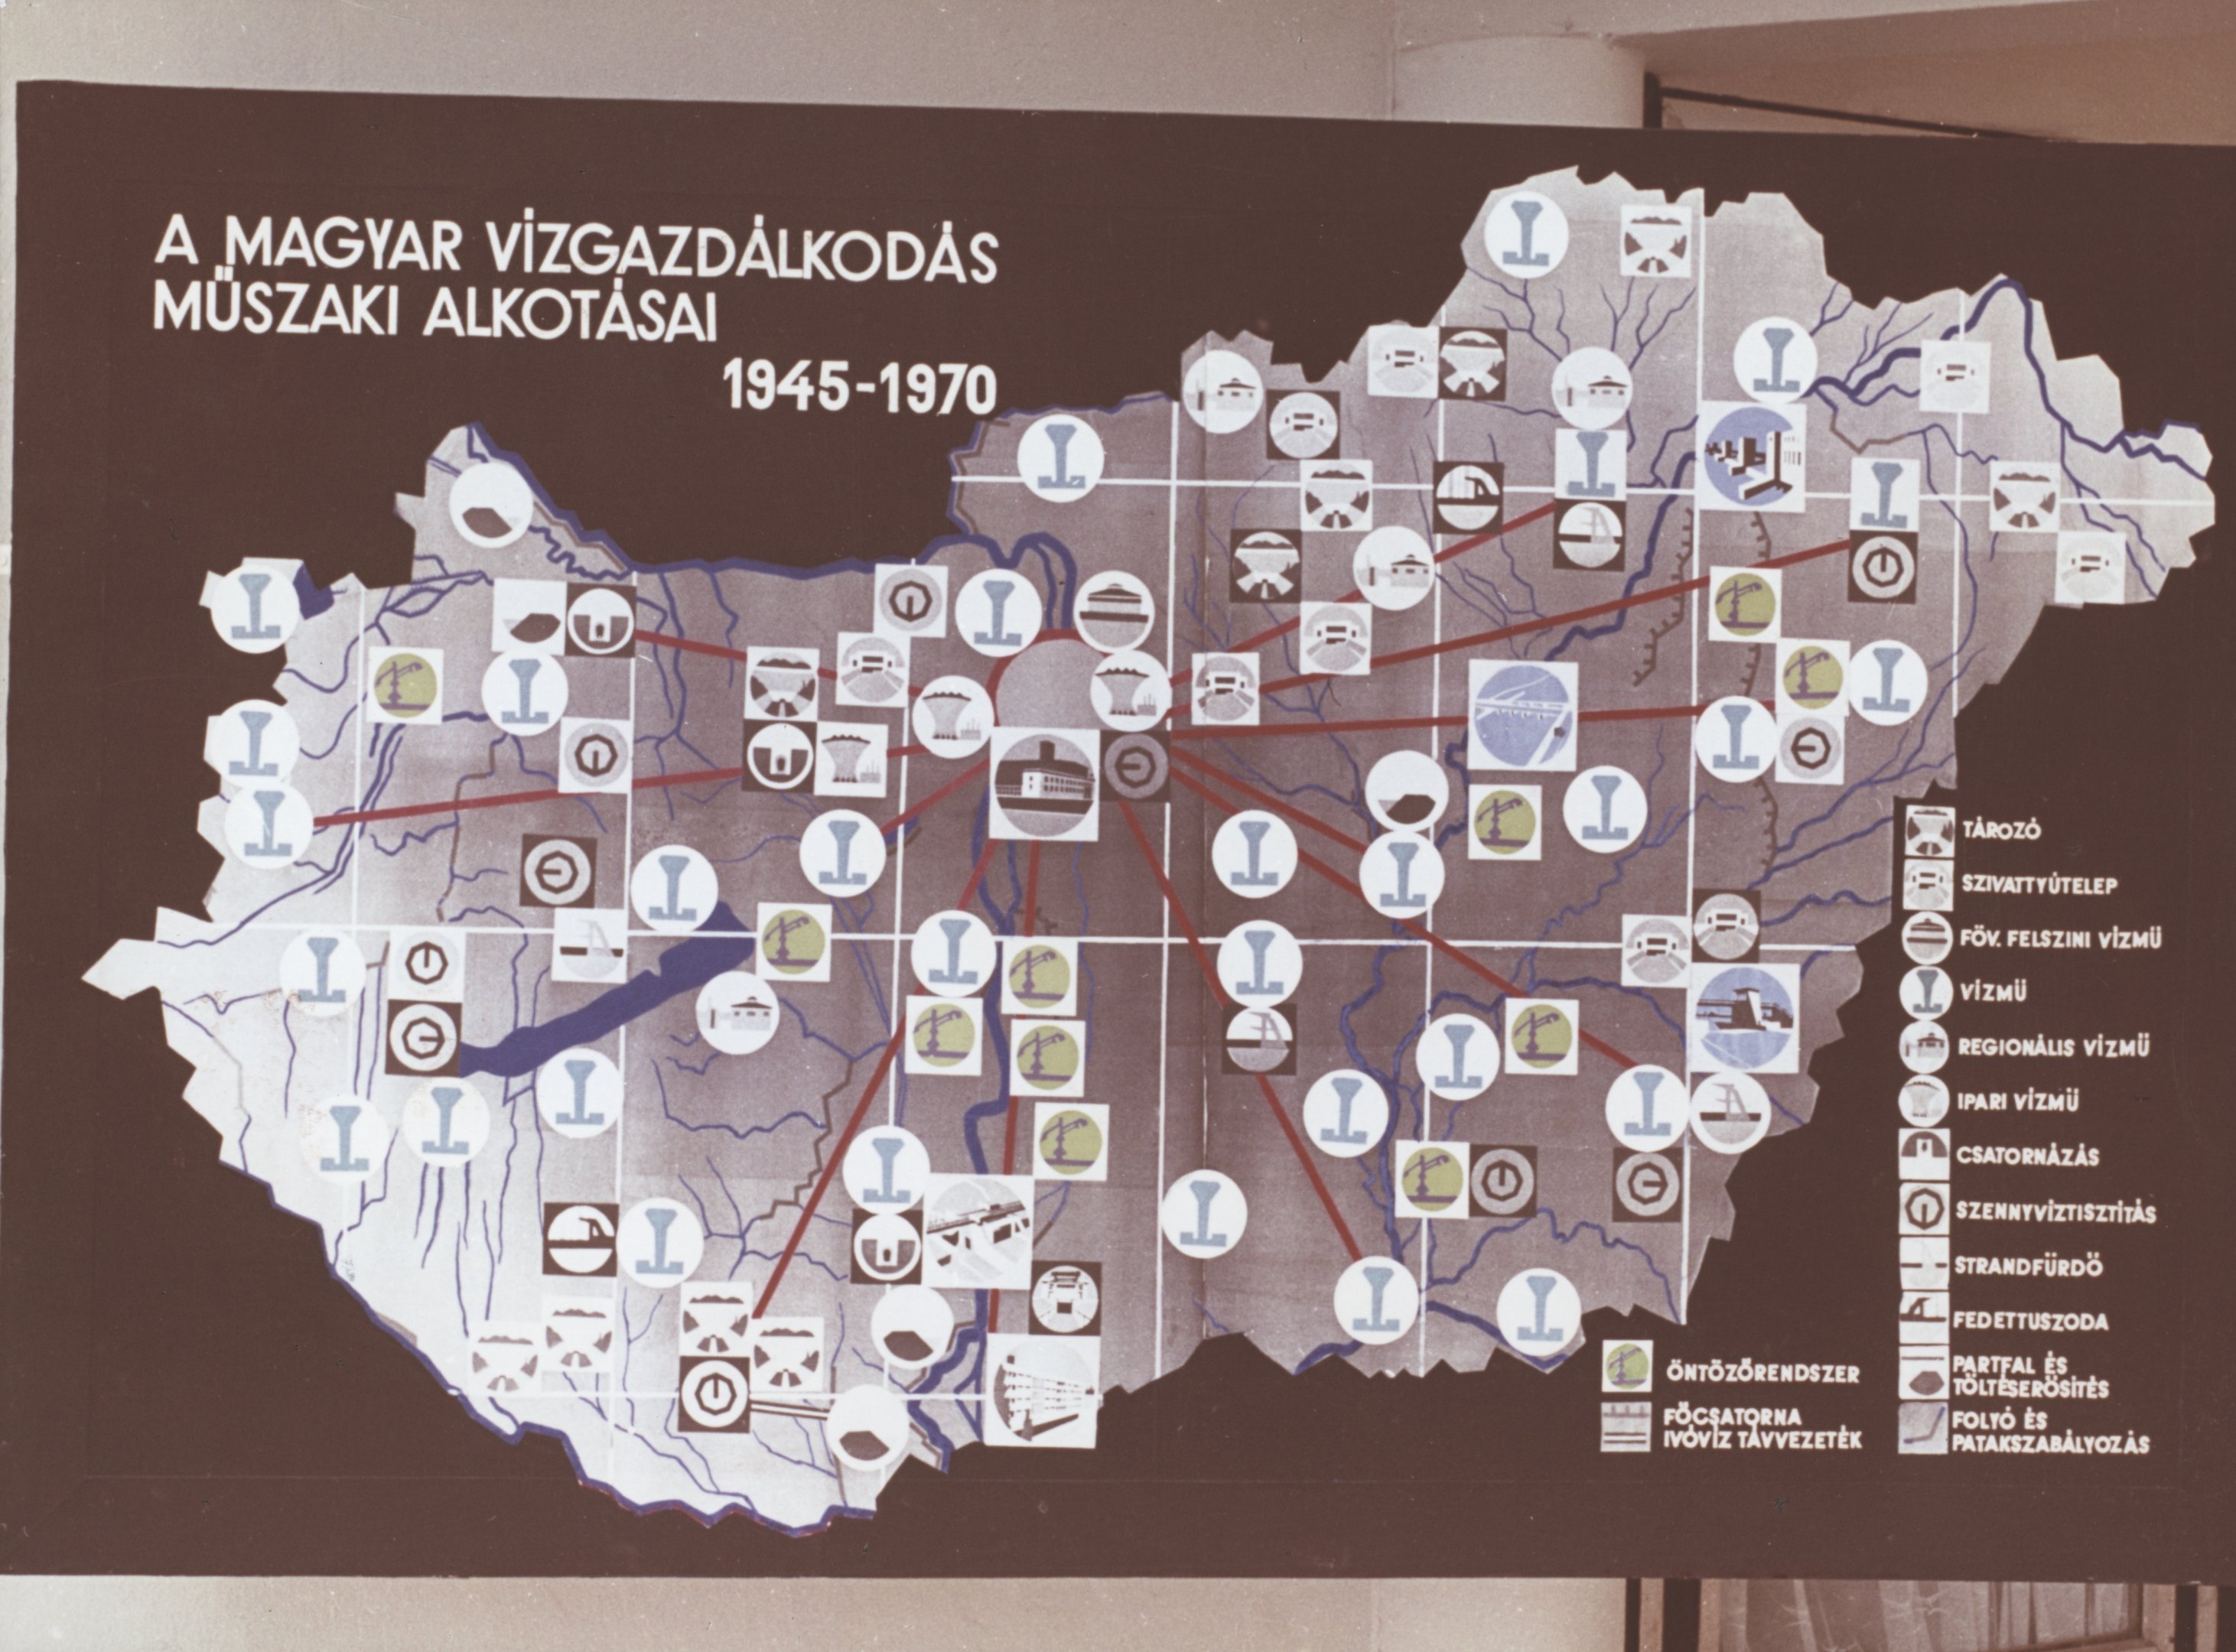 A magyar vízgazdálkodás műszaki alkotásai 1945-1970 (Magyar Környezetvédelmi és Vízügyi Múzeum - Duna Múzeum CC BY-NC-SA)